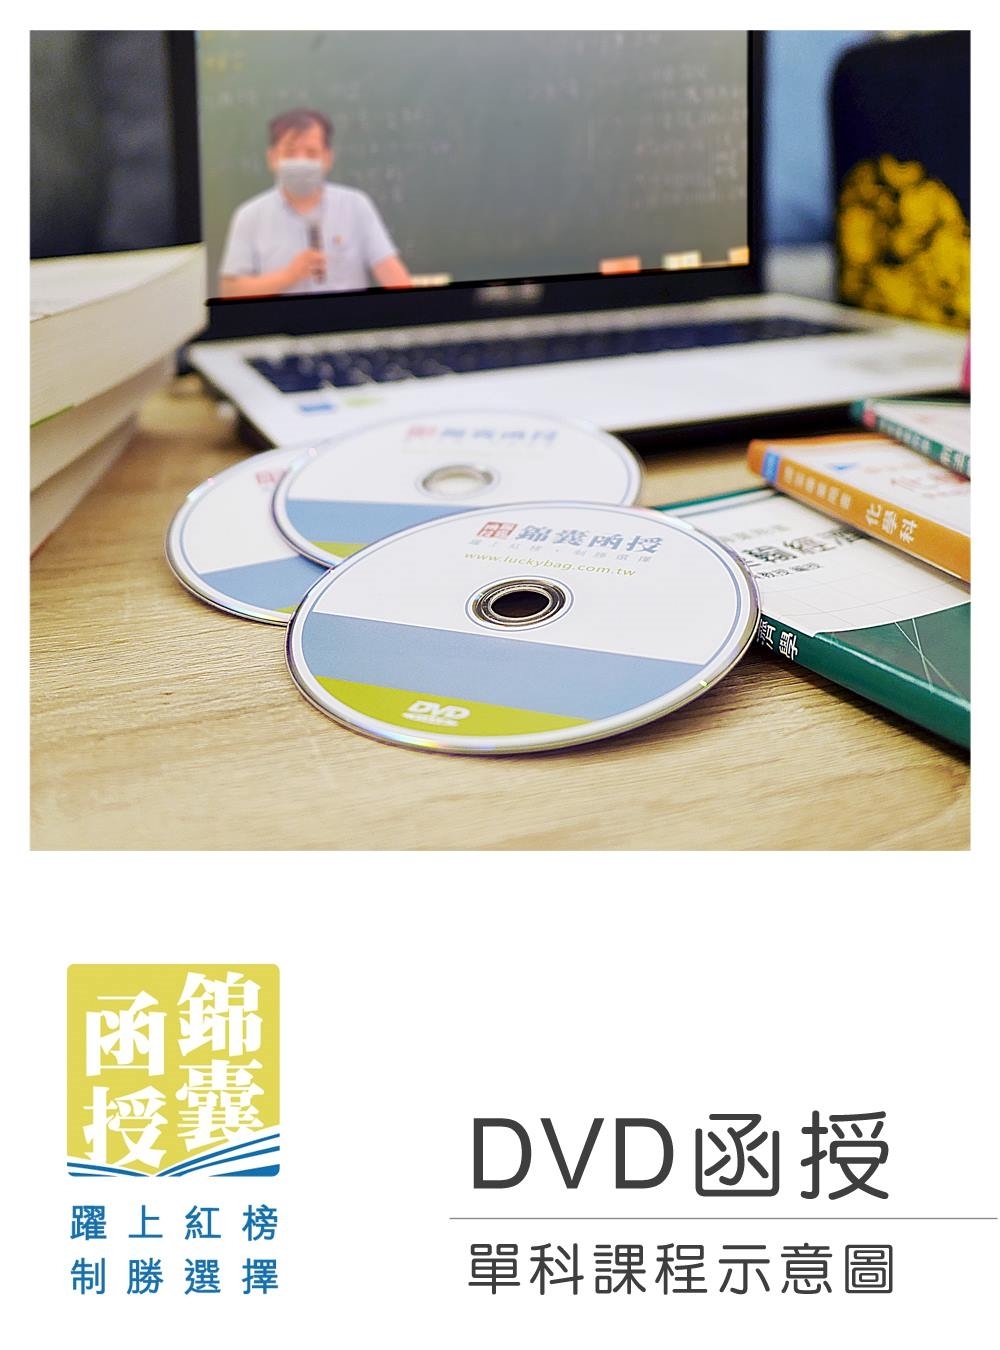 【DVD函授】系統專案管理-單科課程(111版)